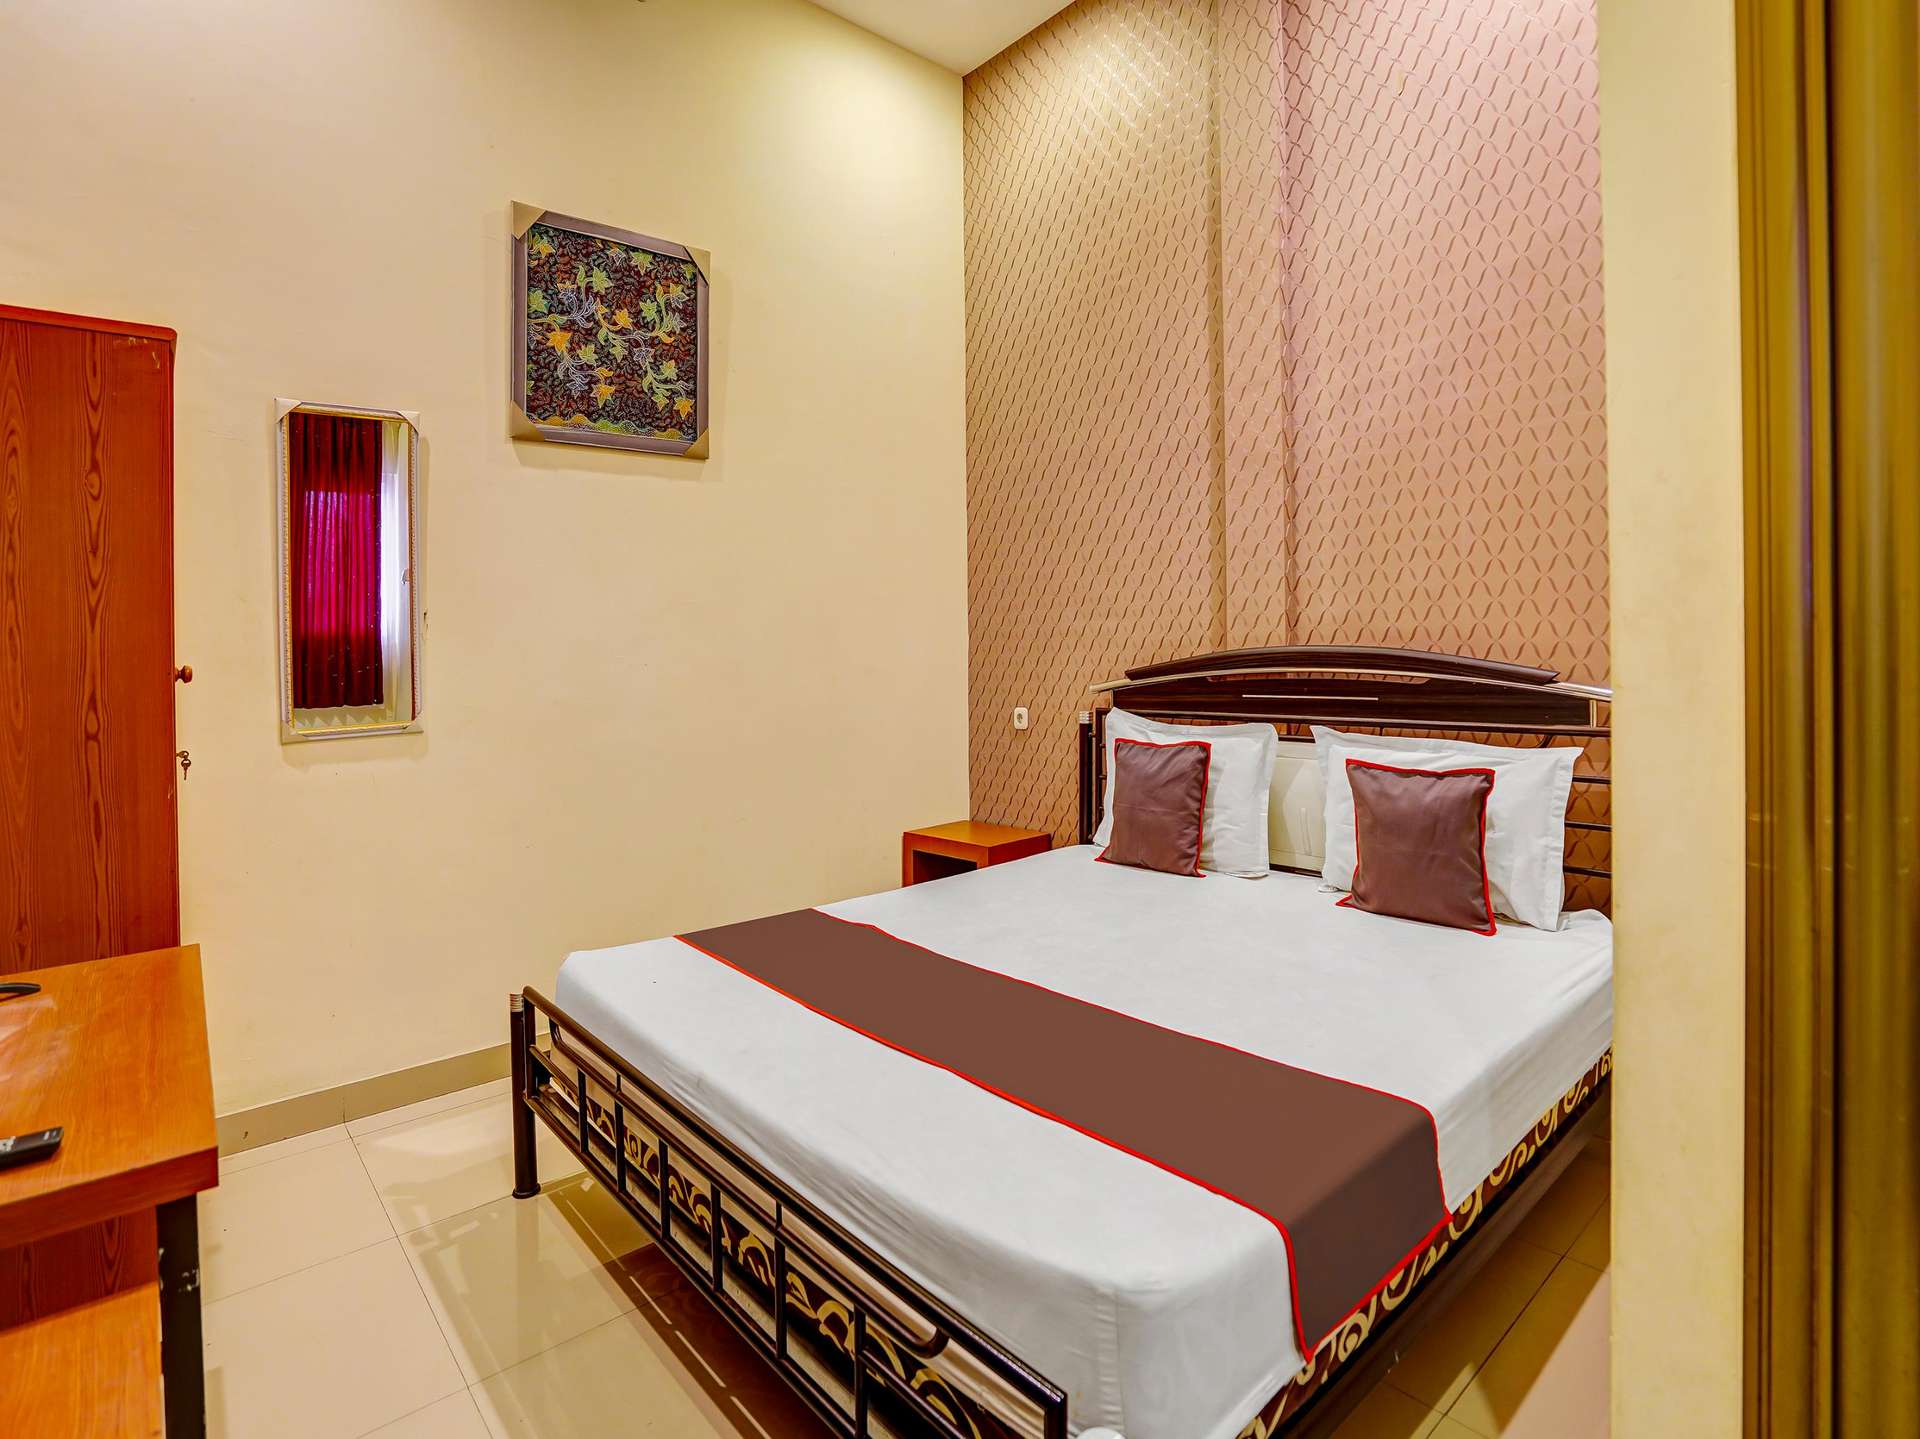 Room rate Capital O 91183 Hotel Bahagia Sampang, Sampang City Center